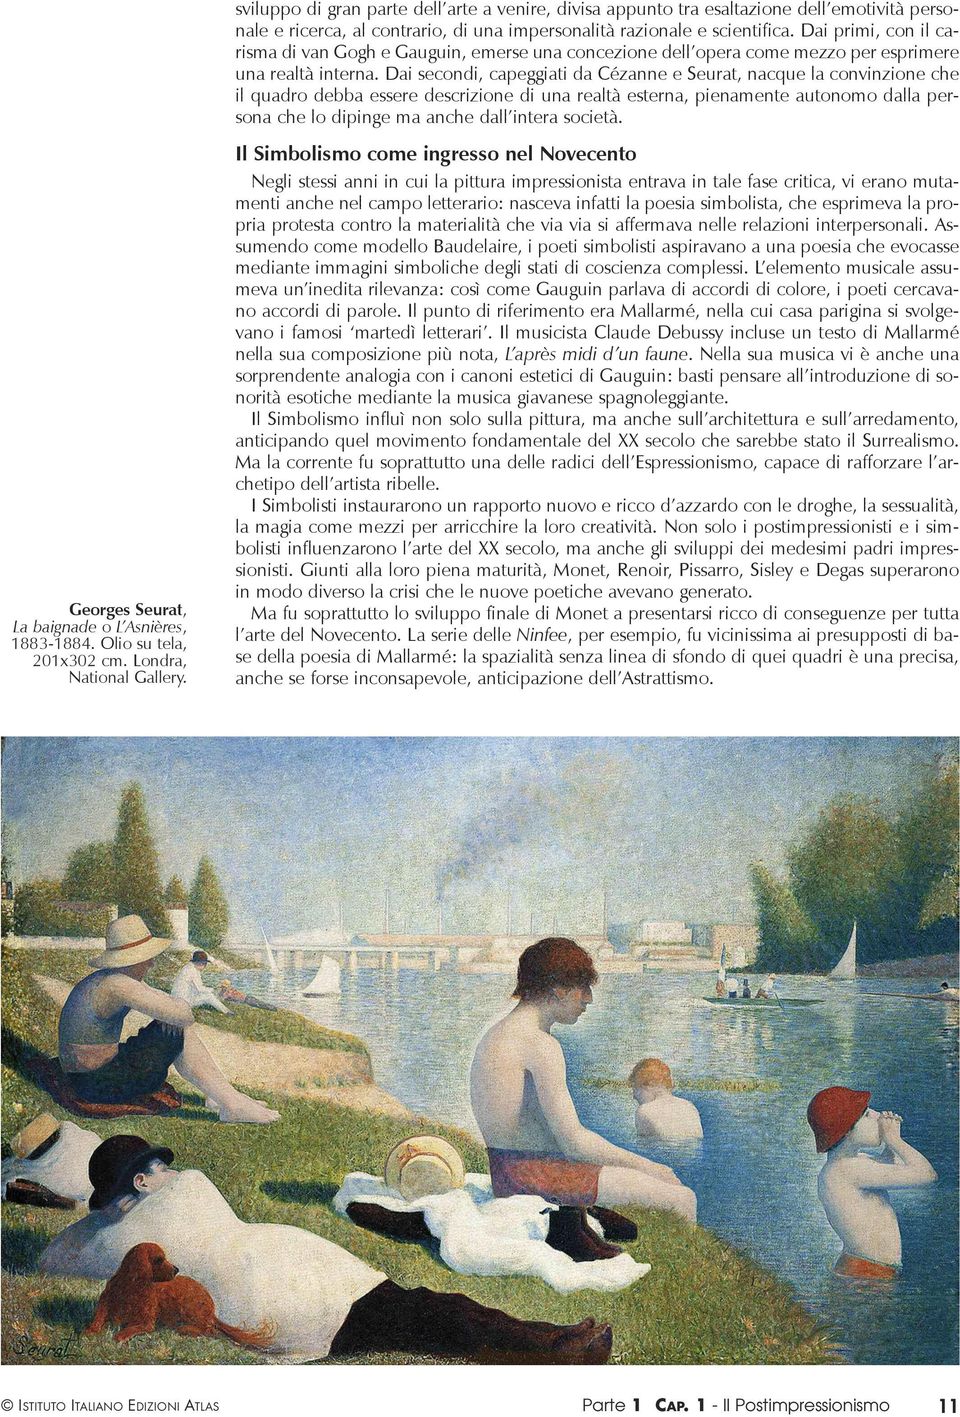 Dai secondi, capeggiati da Cézanne e Seurat, nacque la convinzione che il quadro debba essere descrizione di una realtà esterna, pienamente autonomo dalla persona che lo dipinge ma anche dall intera